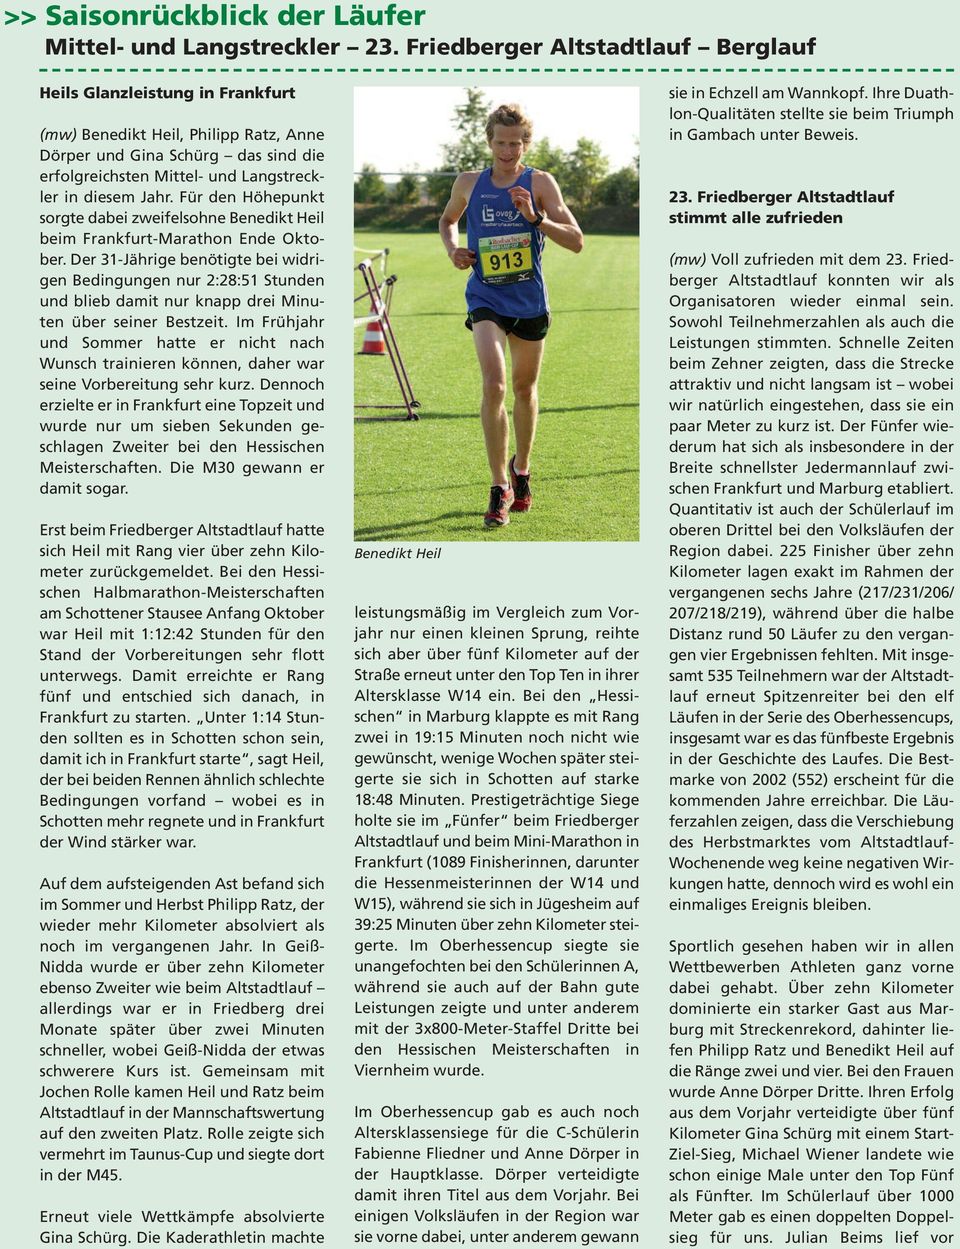 Für den Höhepunkt sorgte dabei zweifelsohne Benedikt Heil beim Frankfurt-Marathon Ende Oktober.